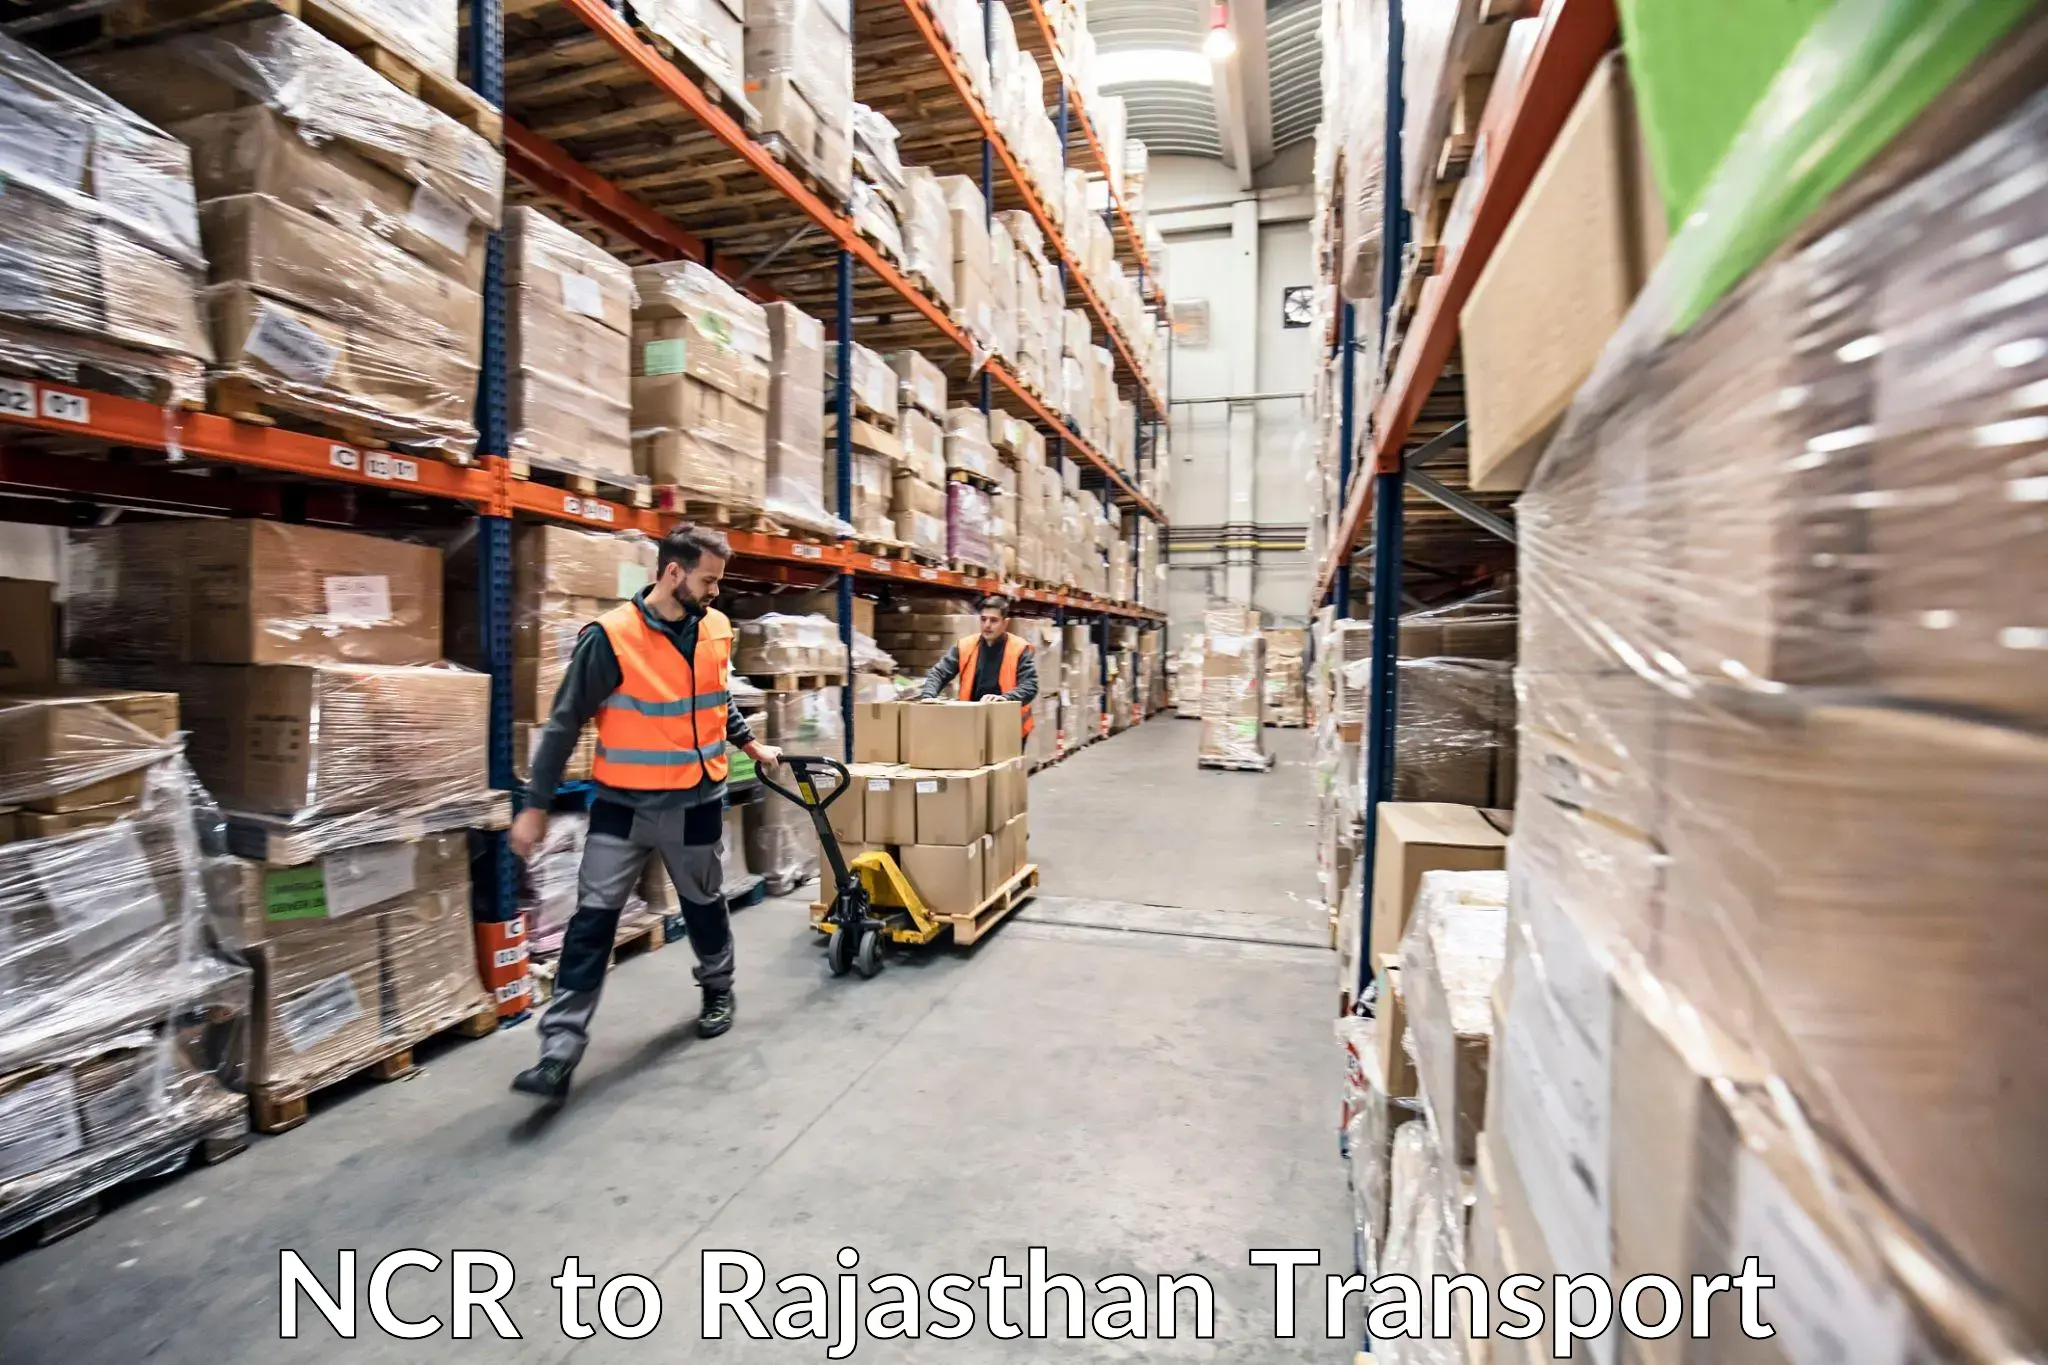 Online transport service NCR to Baran